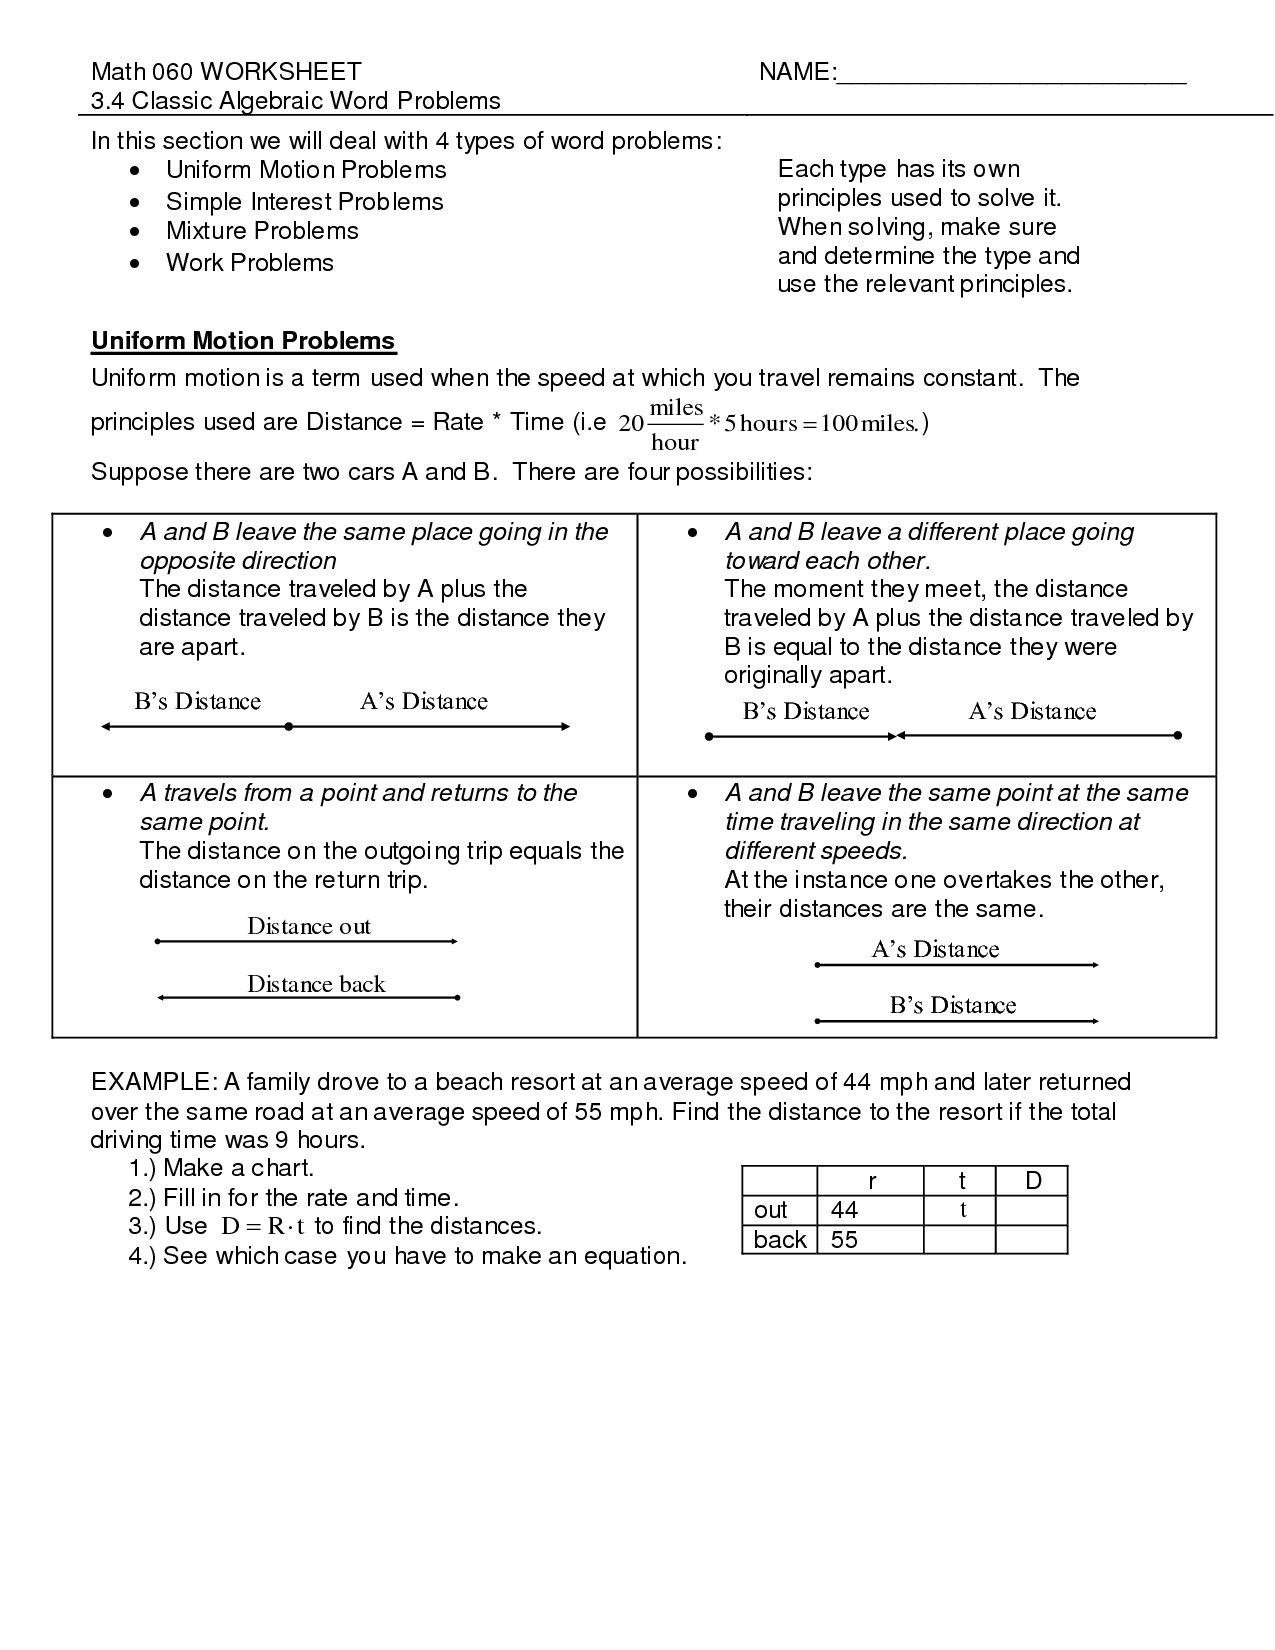 Simple-Interest Problem Worksheets Image